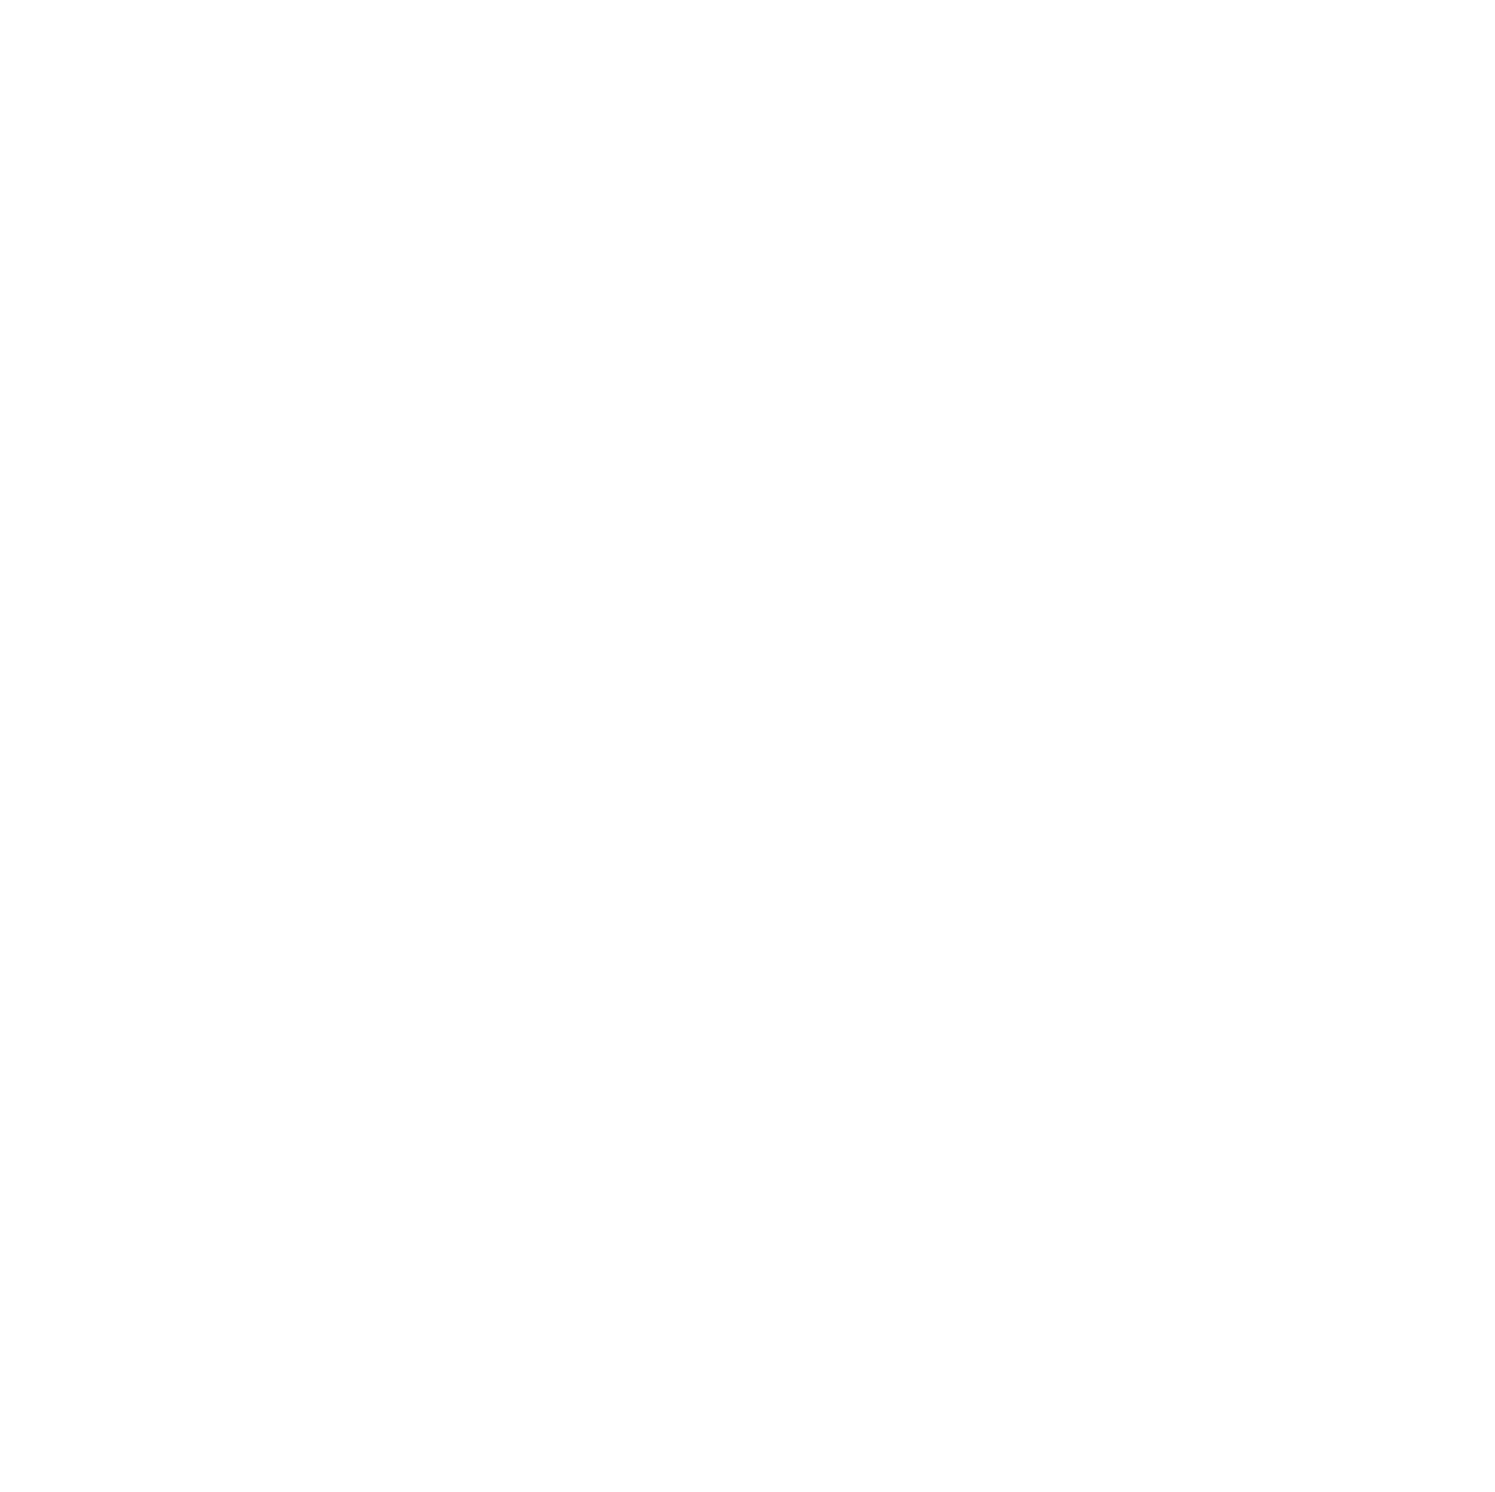 Marcopolo logo pour fonds sombres (PNG transparent)